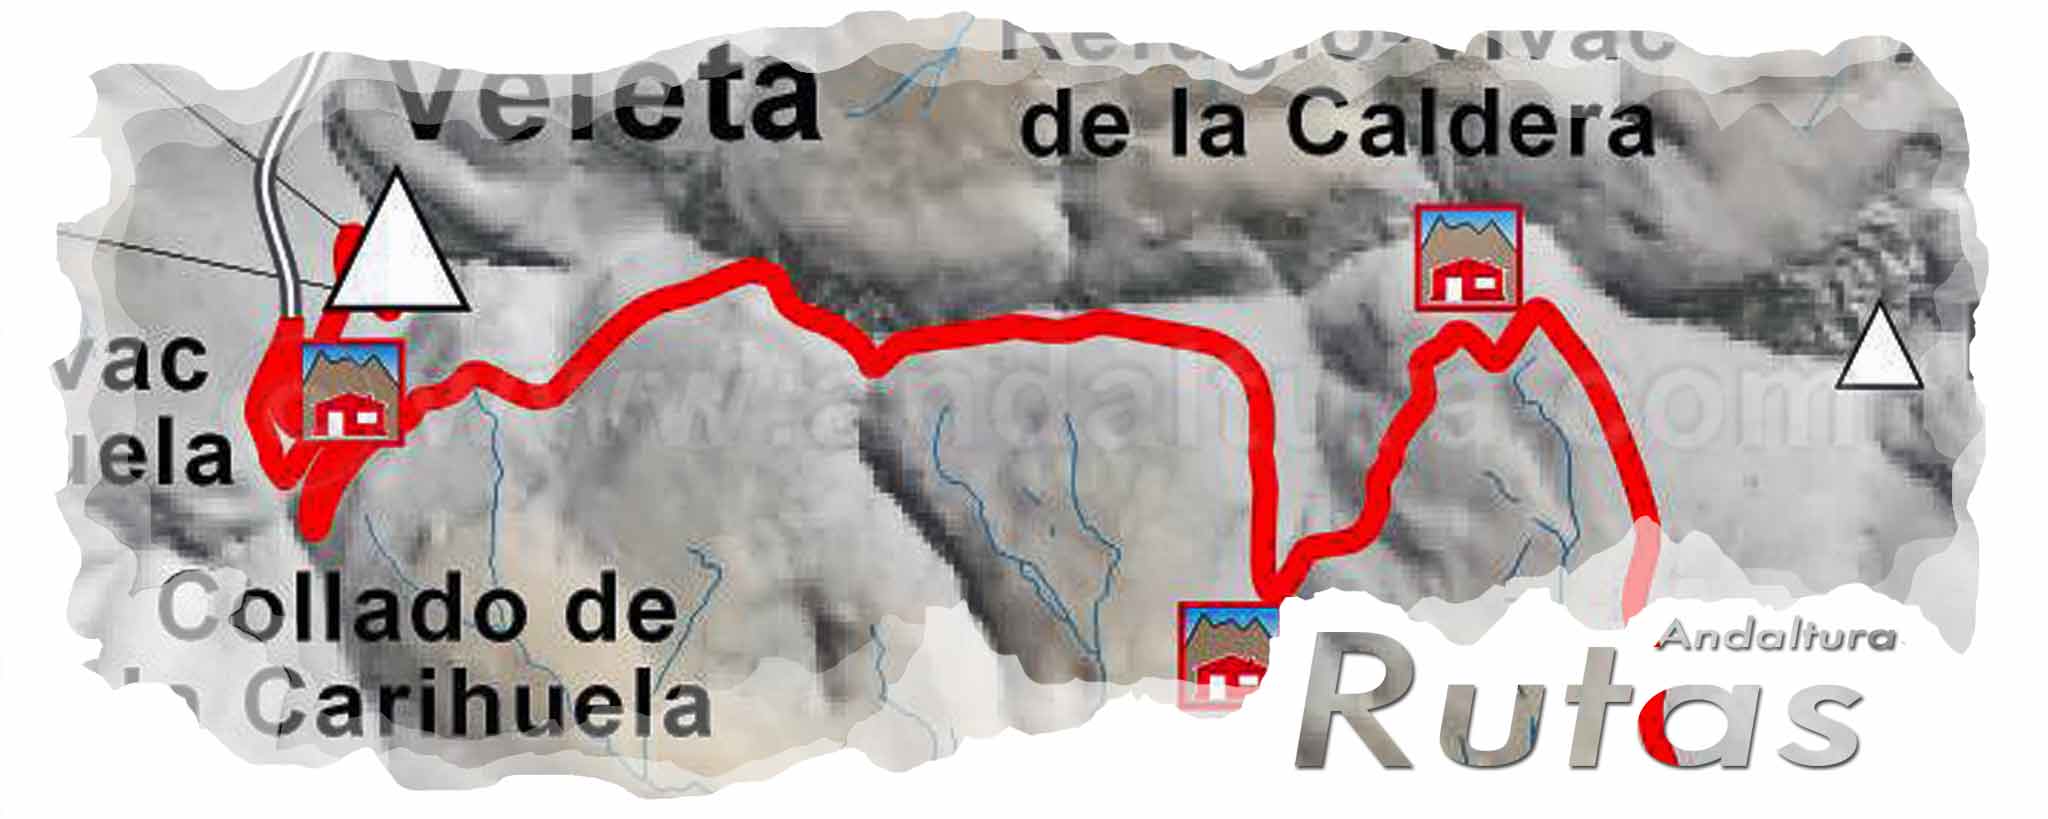 Ruta para BTT desde Capileira al Veleta: Cabecera